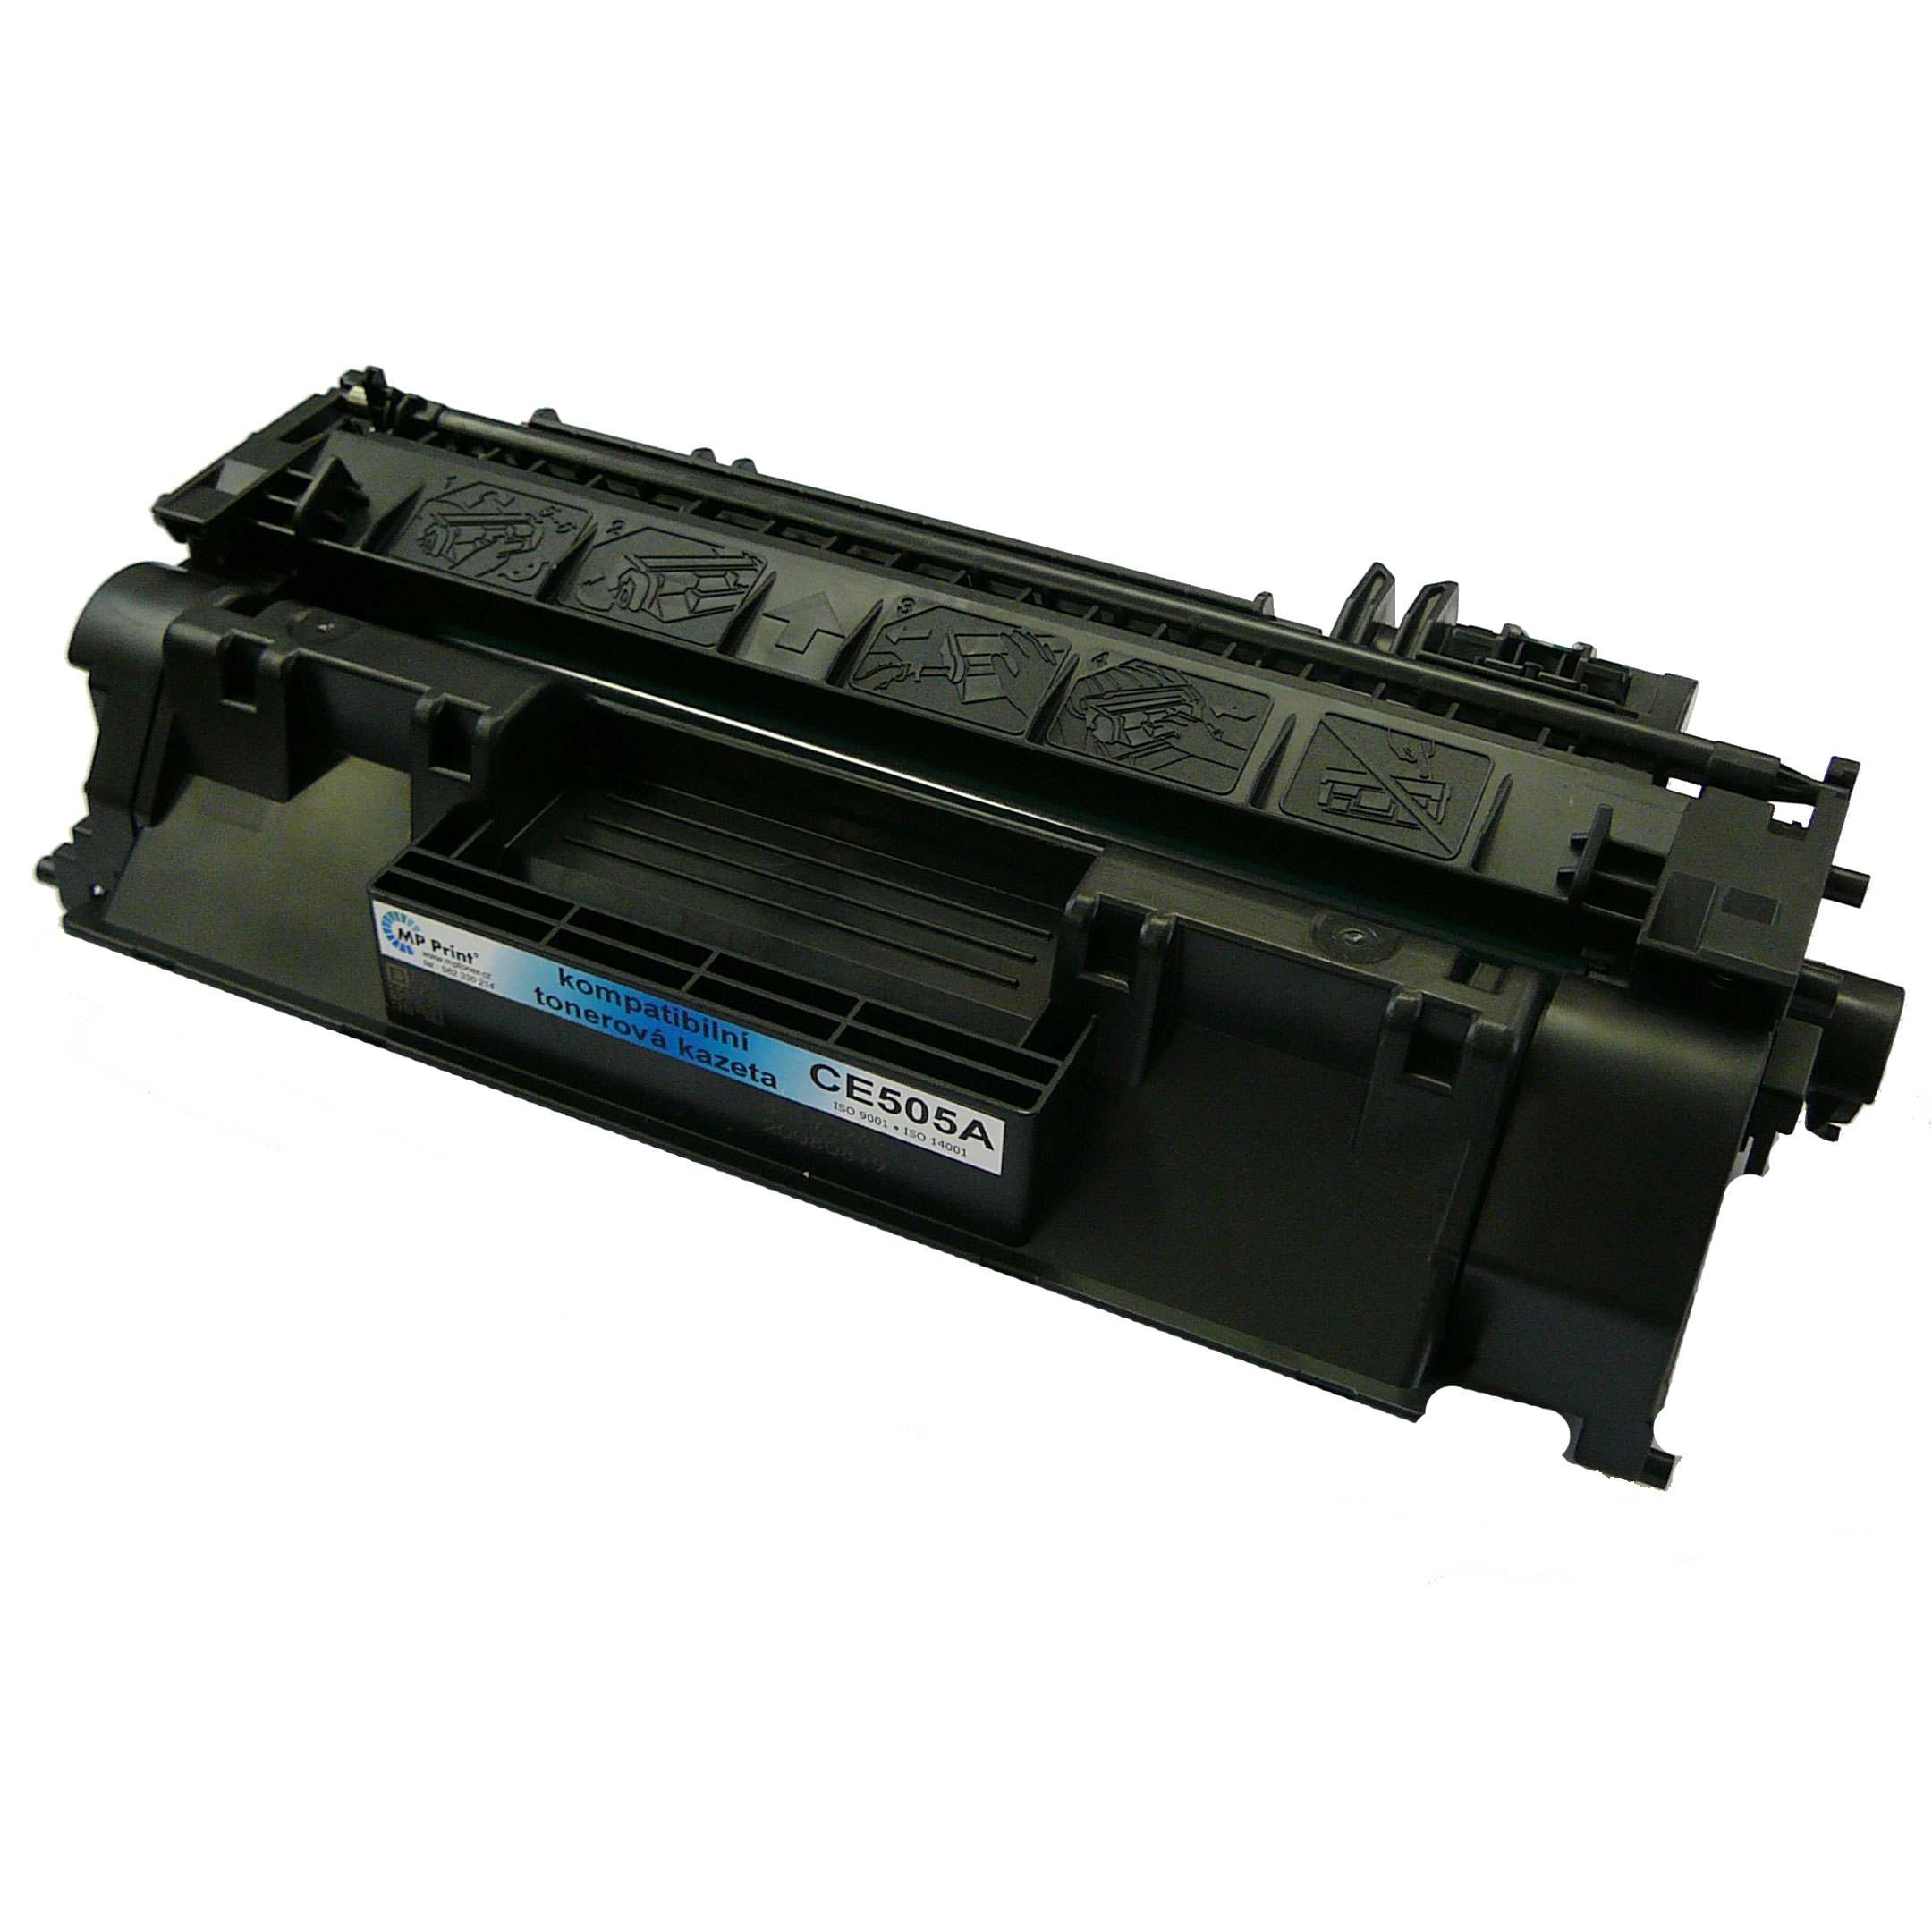 Kompatibilní toner HP CE505X, LaserJet P2055, black, 05X, MP print